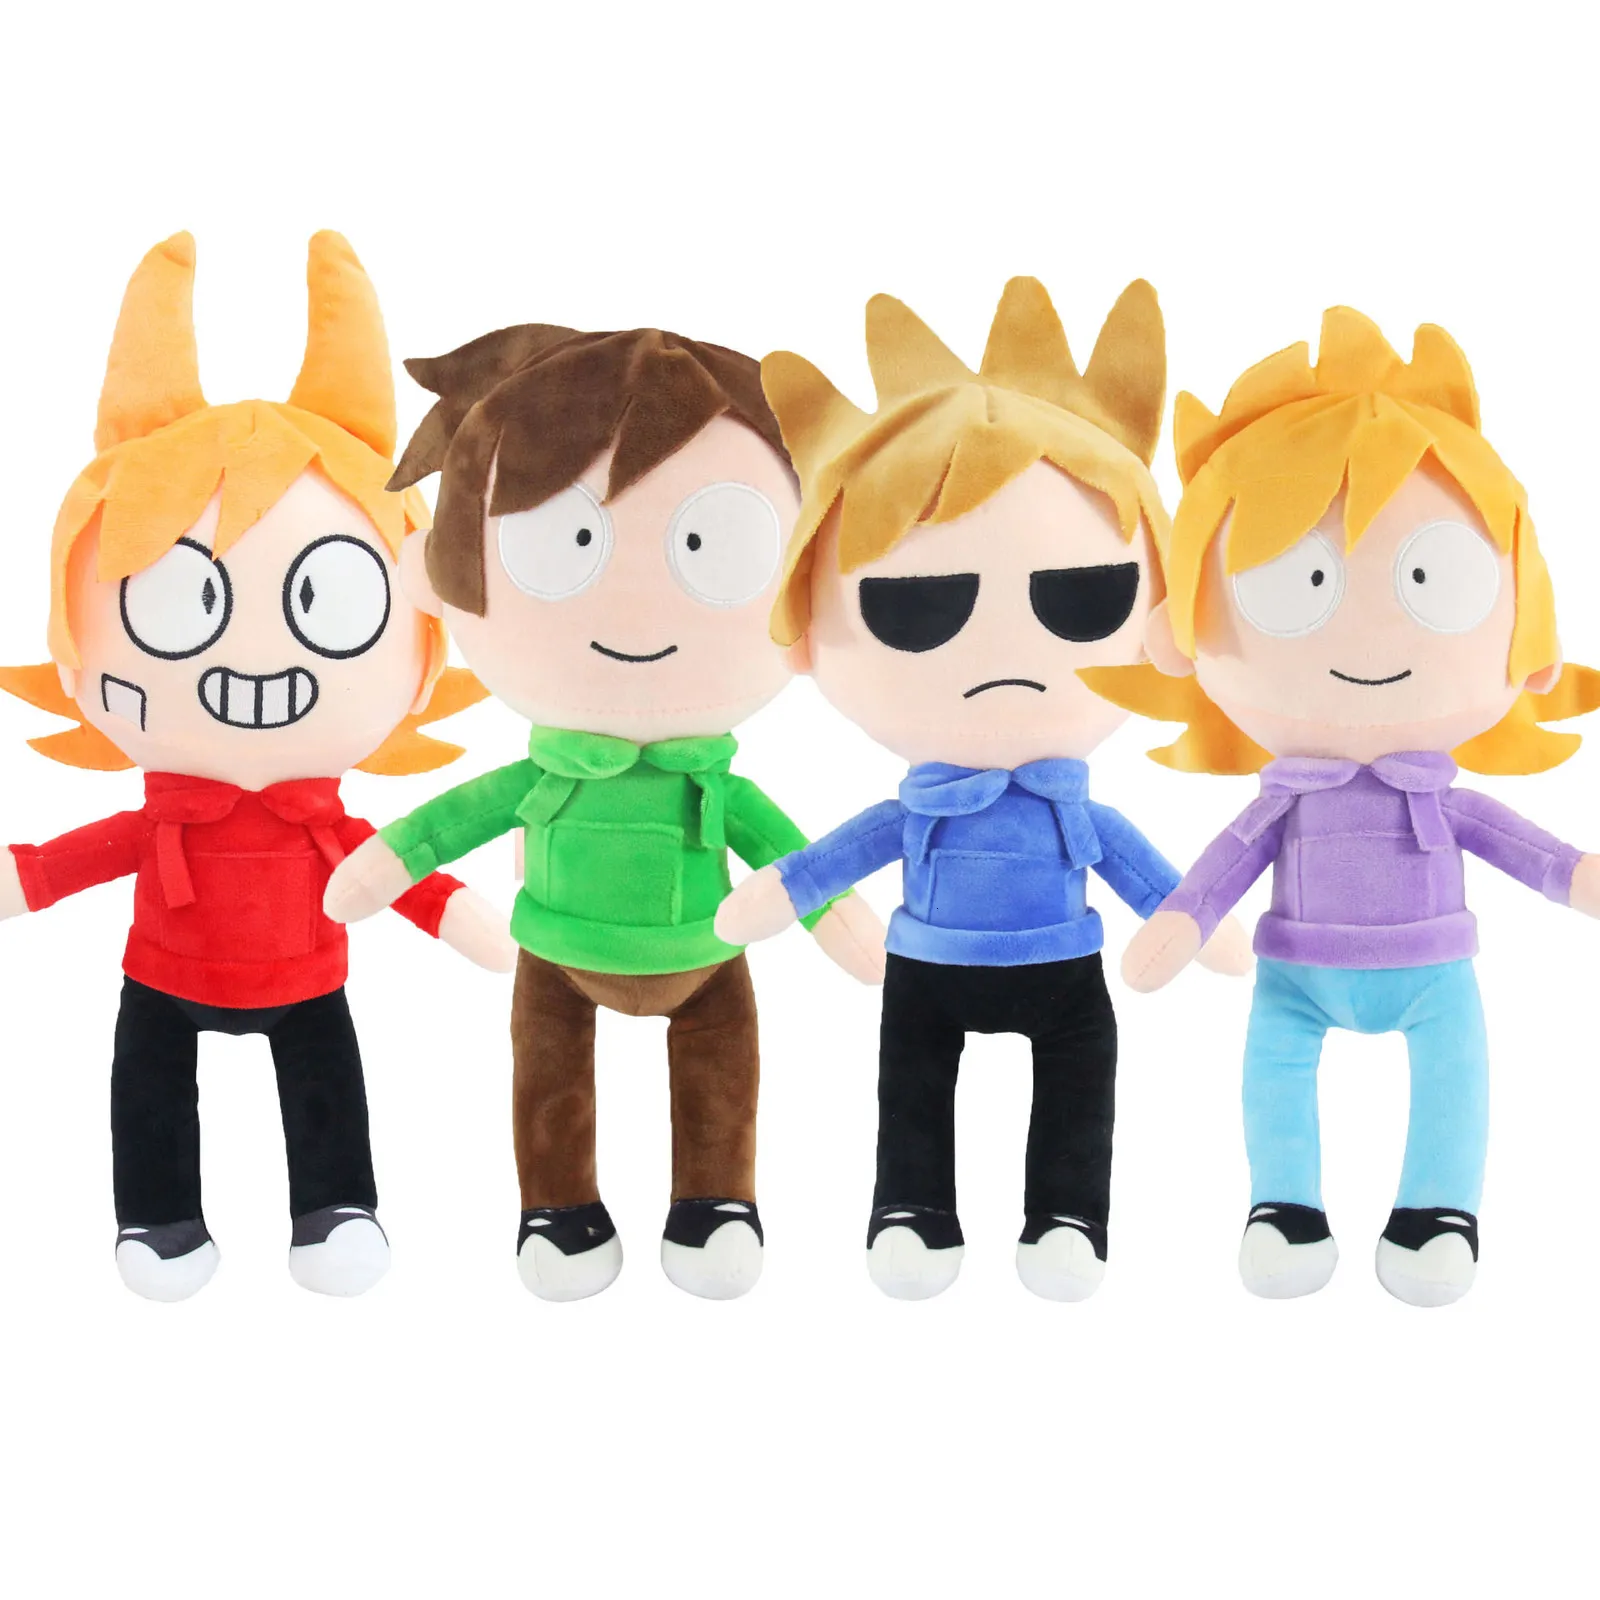 Eddsworld boneca de pelúcia infantil, brinquedos criativos de pelúcia,  travesseiros macios, periféricos, Tord Matt, Tom, 32